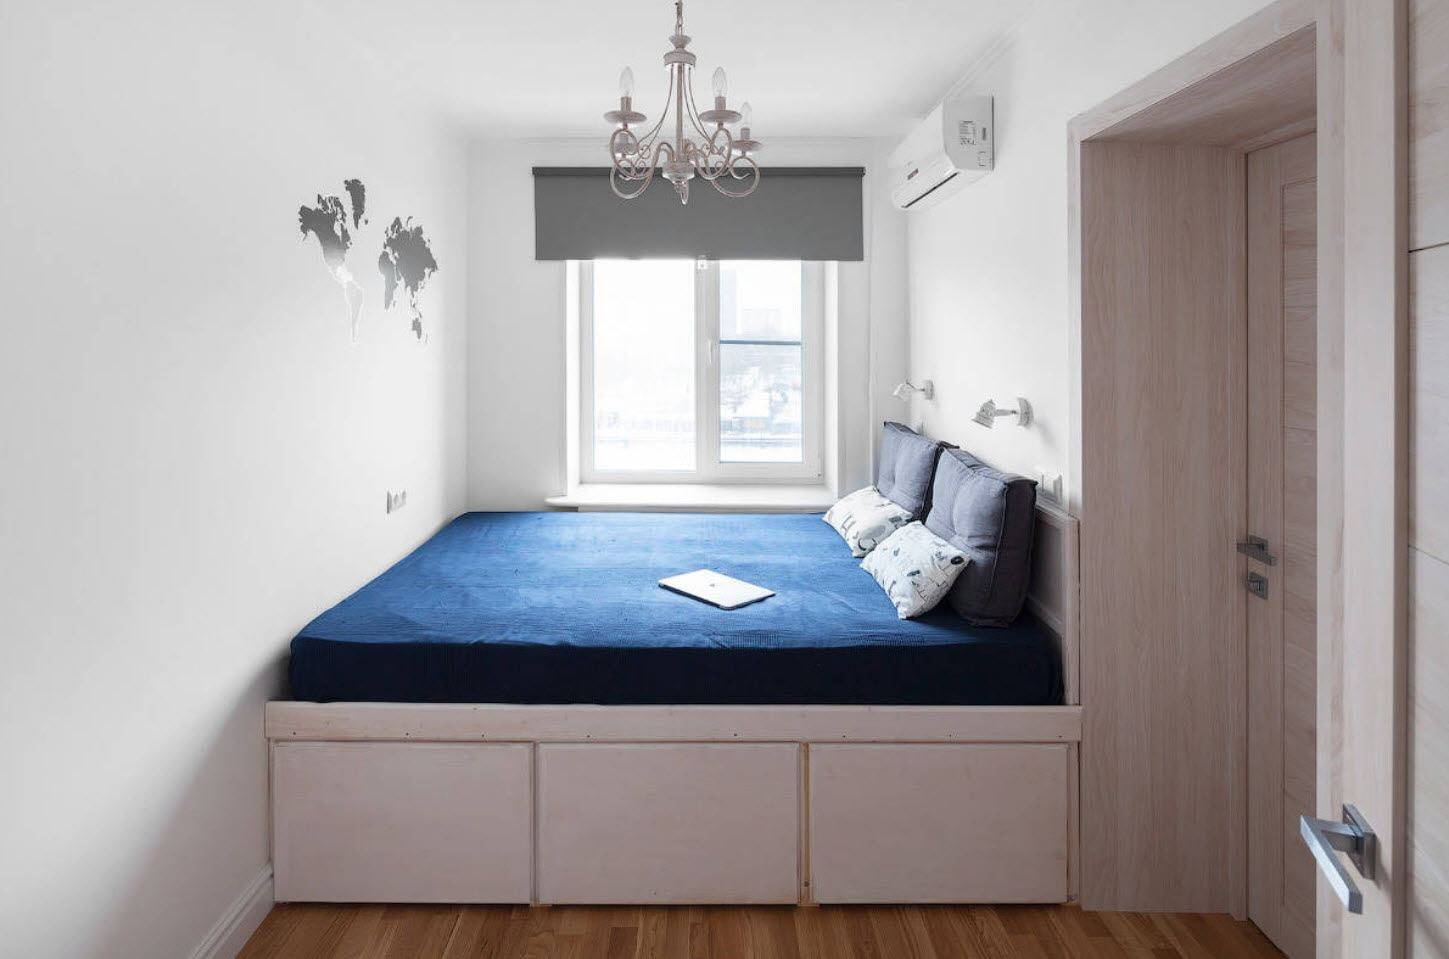 Кровать-подиум, фото для маленькой спальни: 5 сторон неожиданного решения